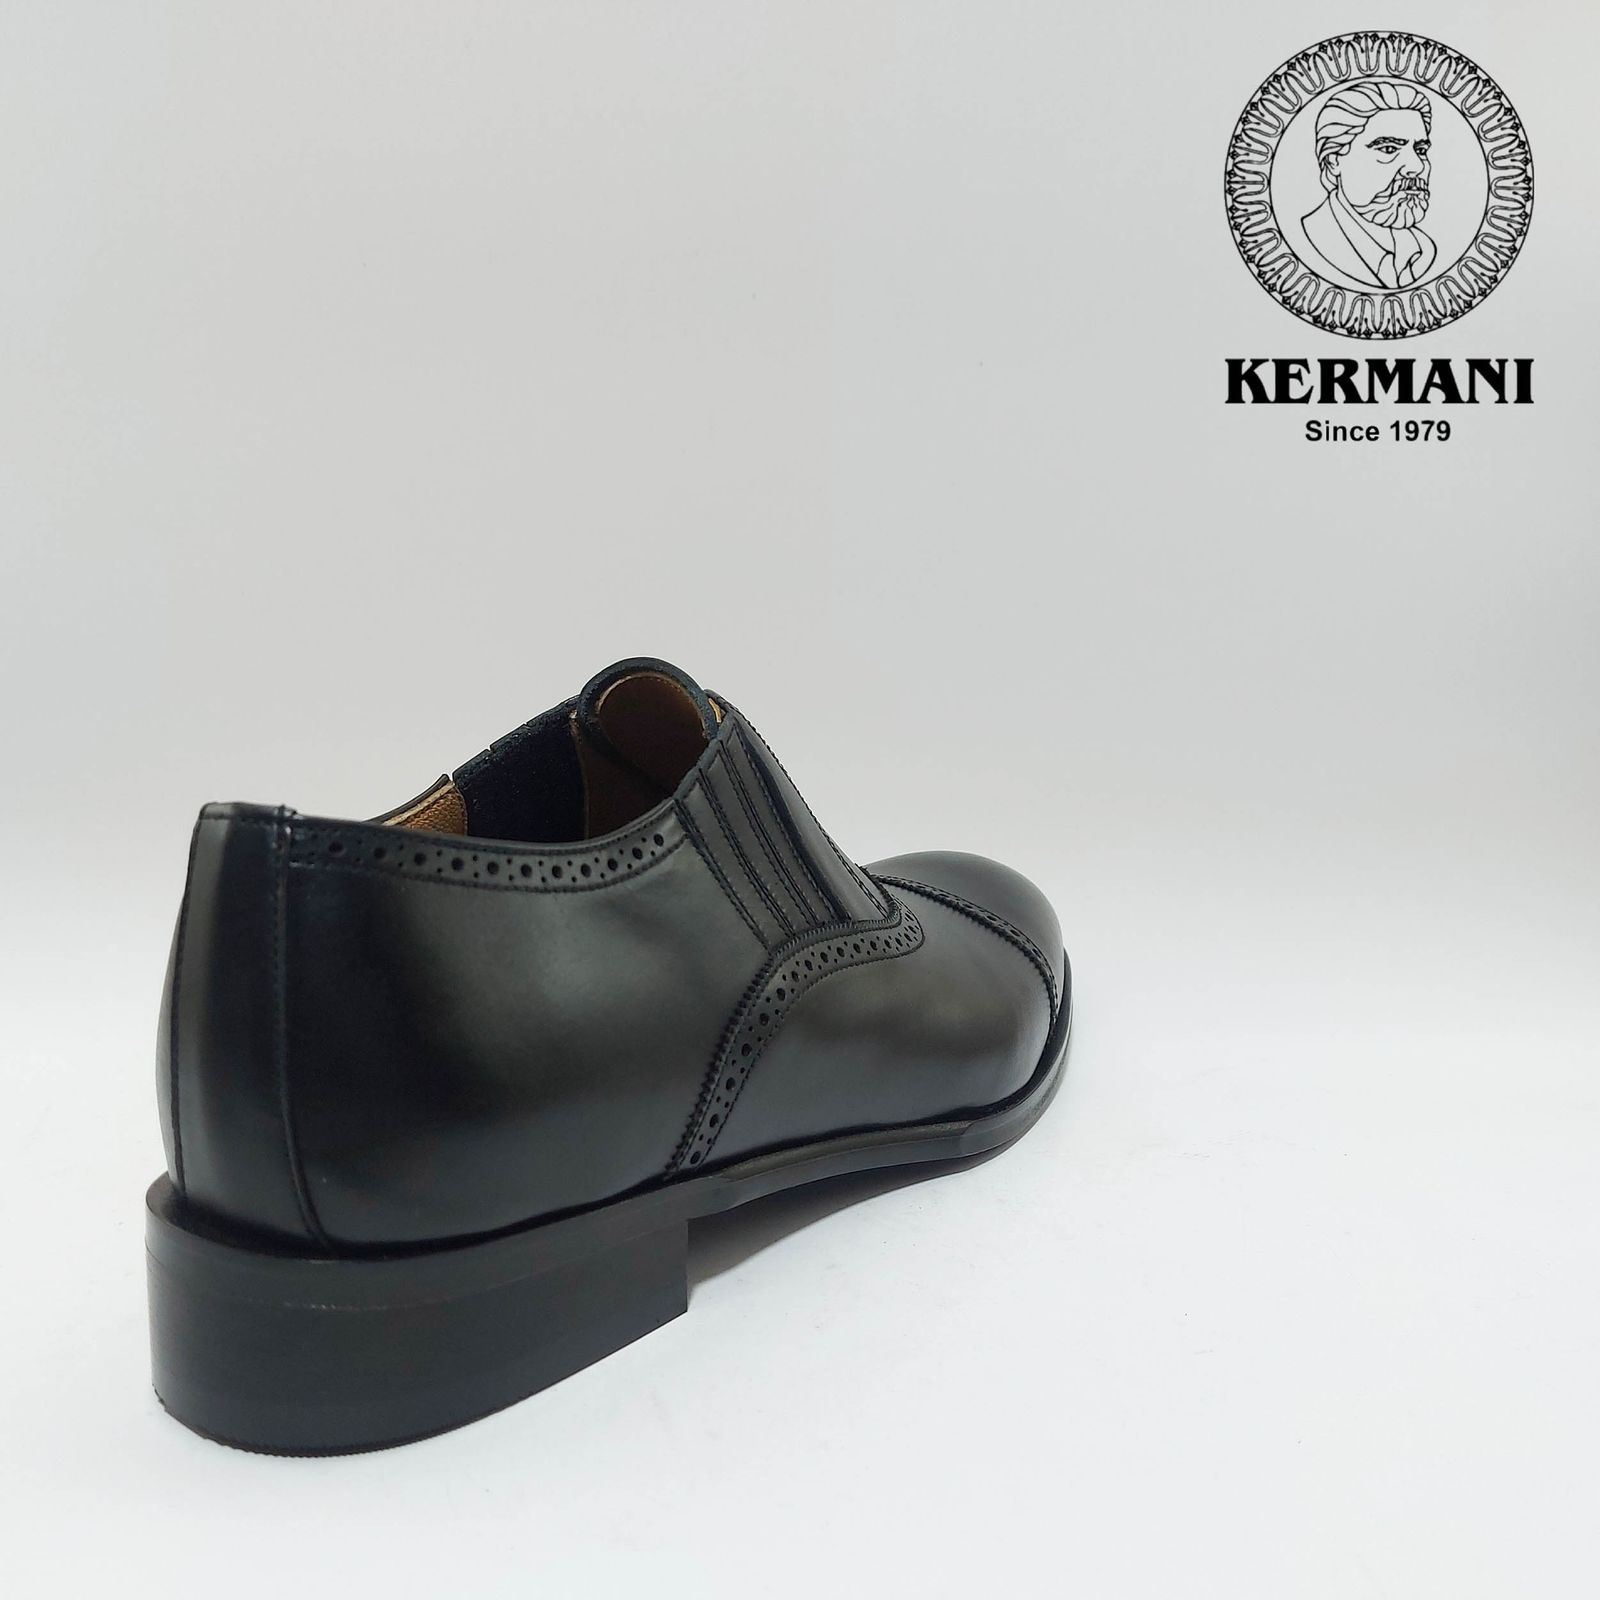 کفش مردانه کرمانی مدل چرم دستدوز طبیعی کد 1070 رنگ مشکی -  - 4